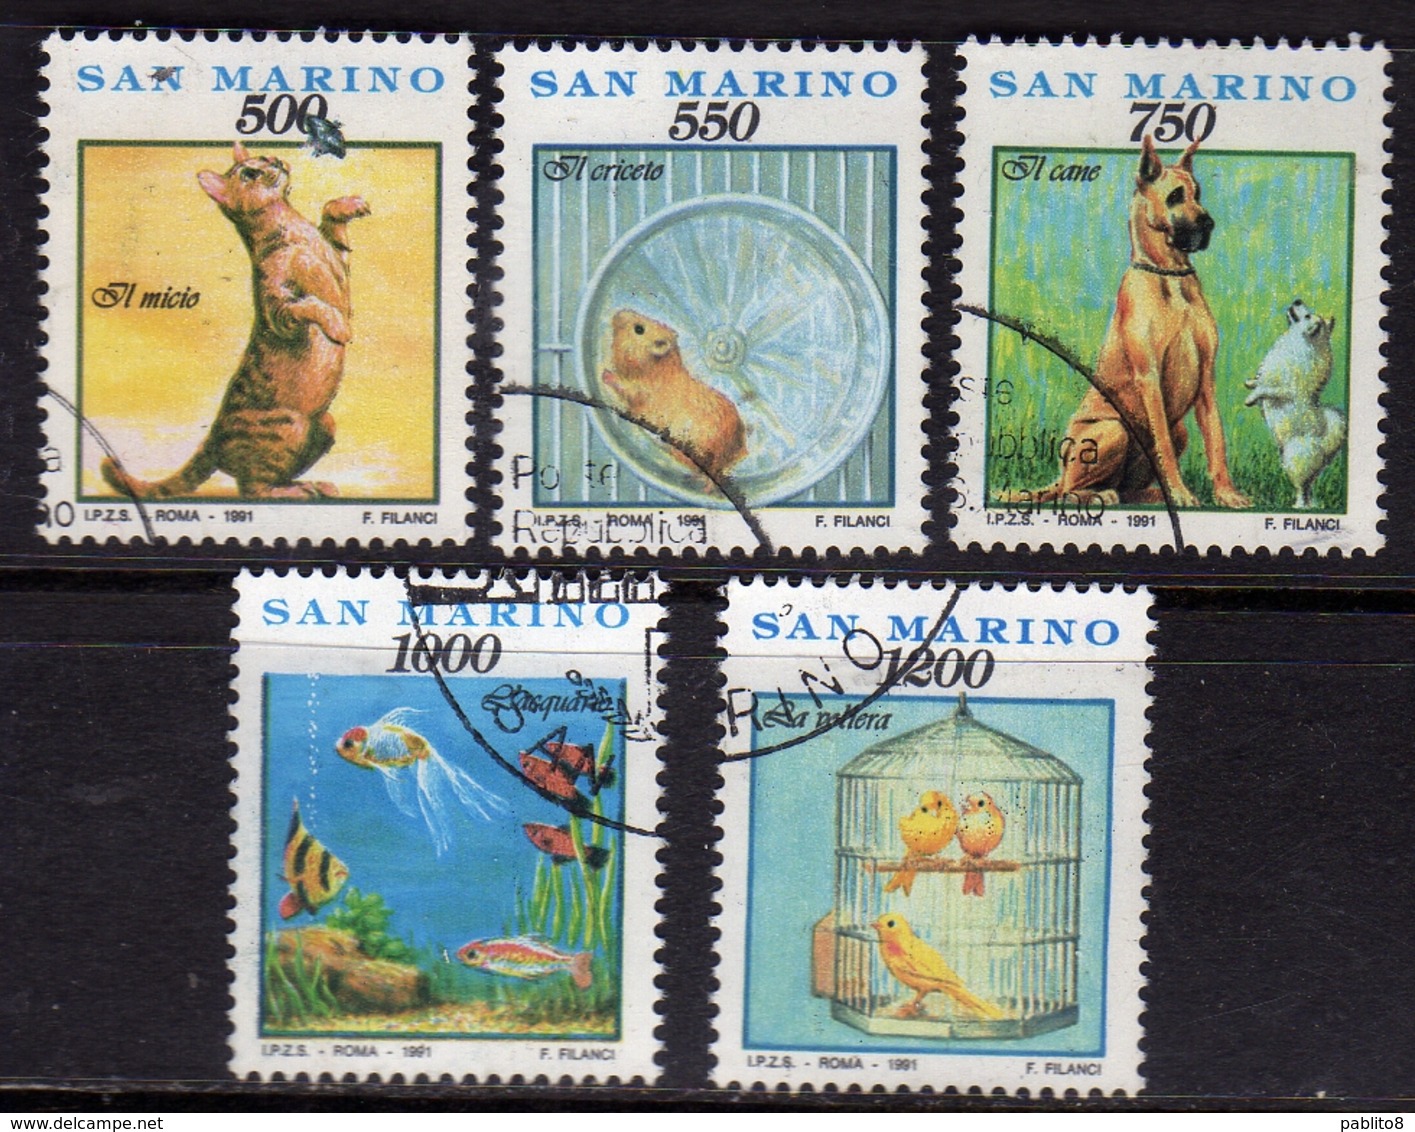 REPUBBLICA DI SAN MARINO 1991 COSE GESTI E AFFETTI FAUNA ANIMALI ANIMALS SERIE COMPLETA COMPLETE SET USATA USED OBLITERE - Used Stamps